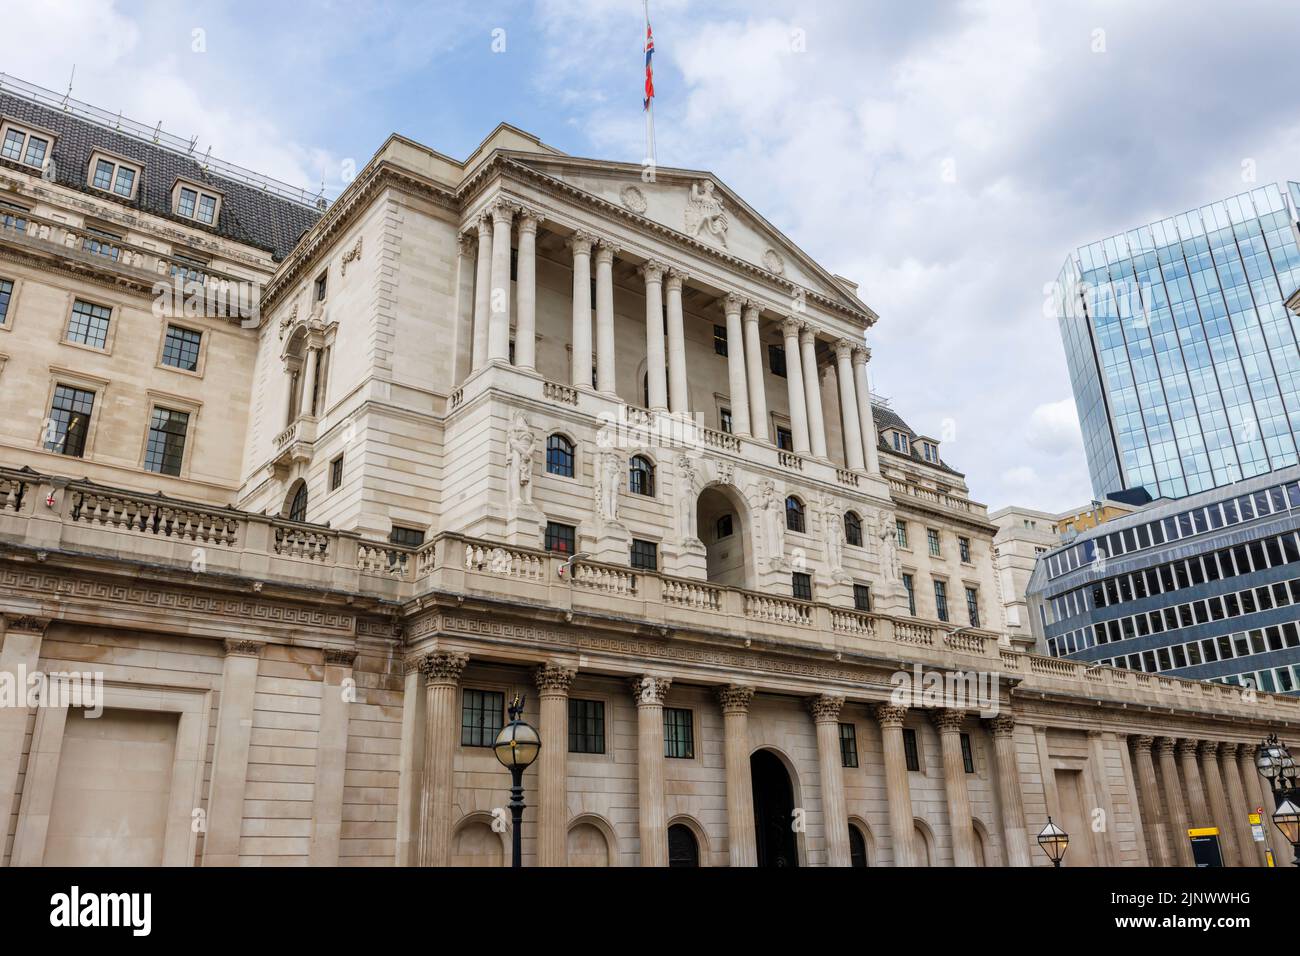 Vista de la entrada y fachada del Banco de Inglaterra en Threadneedle Street y la Bolsa de Valores Tower, City of London en el distrito financiero EC3 Foto de stock